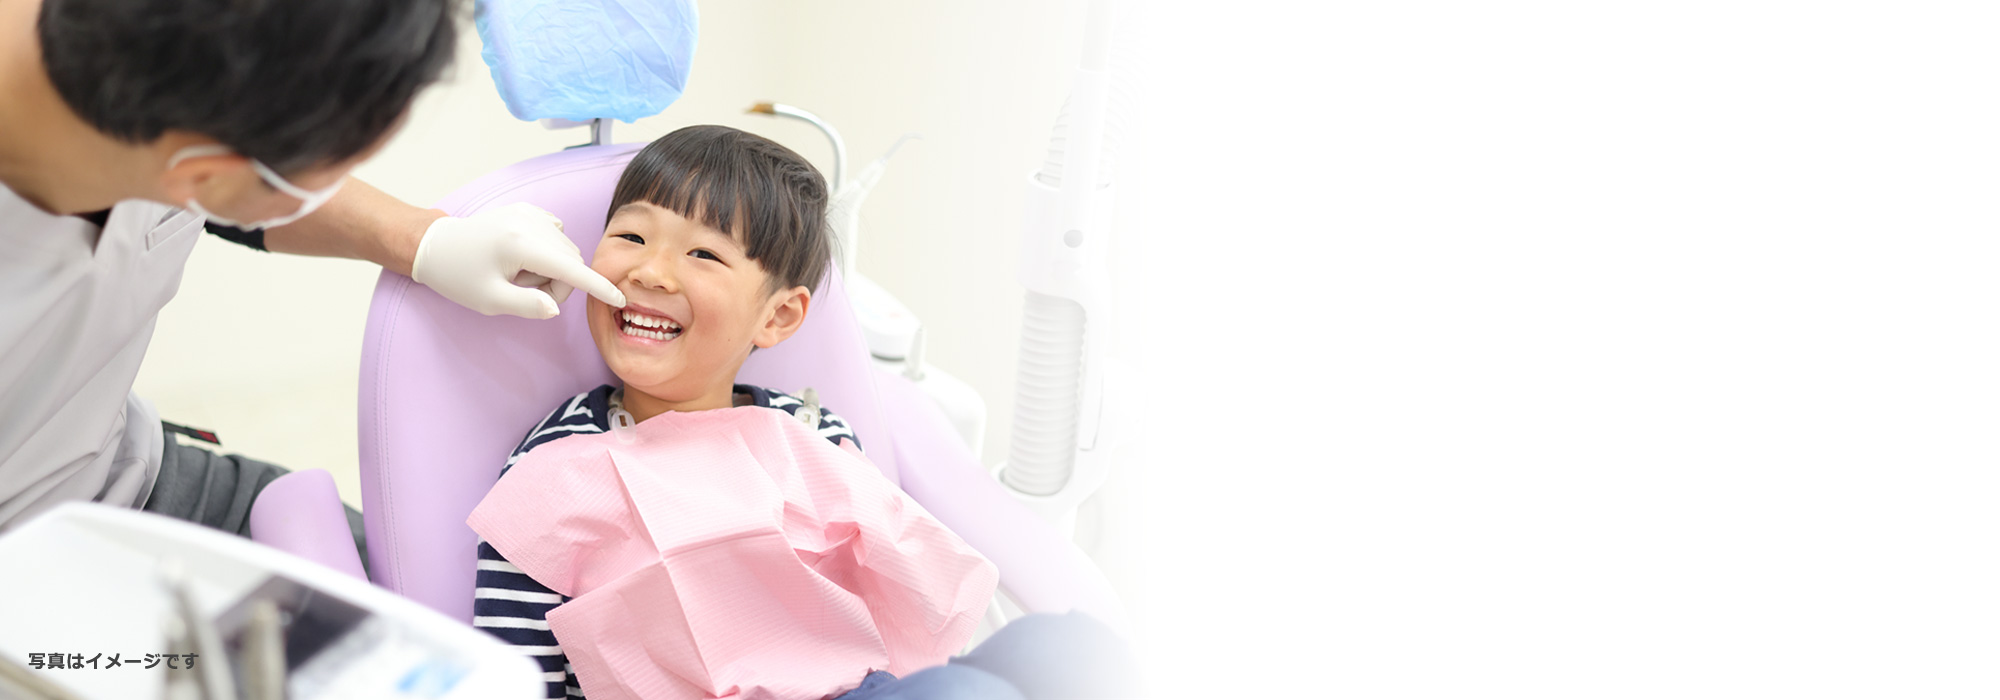 小児の歯は柔らかく 進行が早いため 早めの治療が大事です